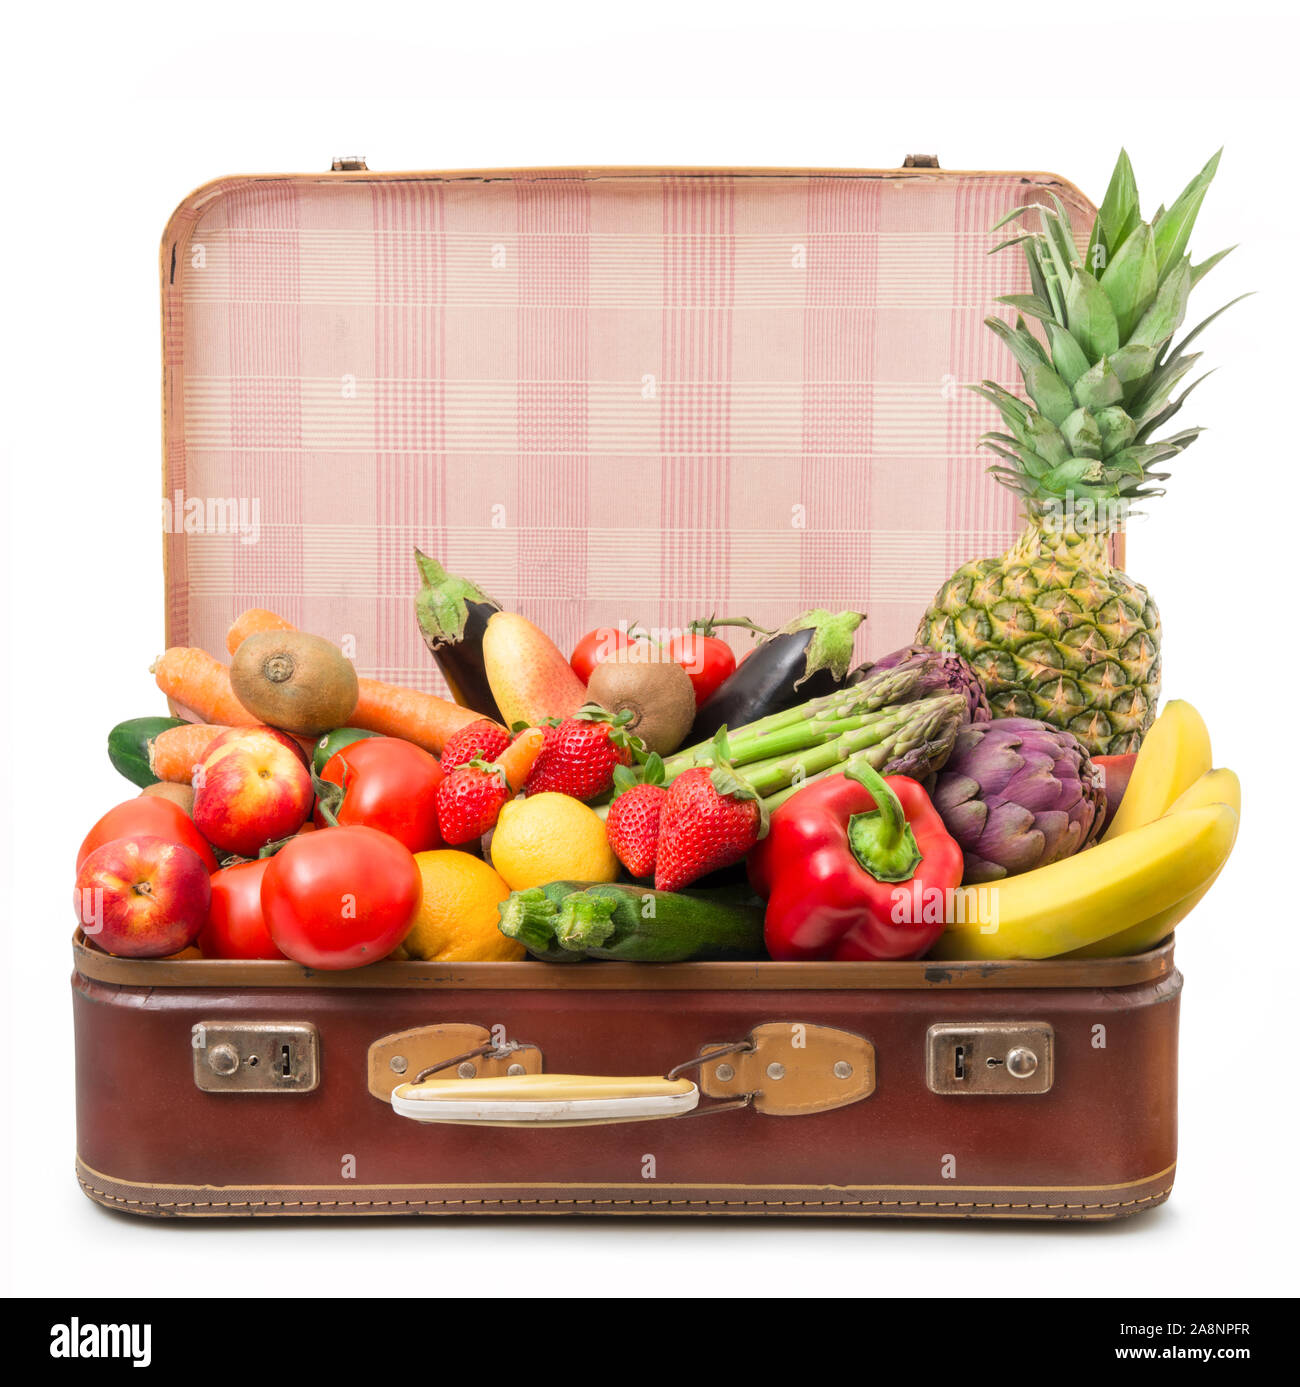 В сумке 5 килограмм овощей. Фрукты в чемодане. Чемодан для фруктов. Набор овощи и фрукты в чемодане. Кейс из фруктов.